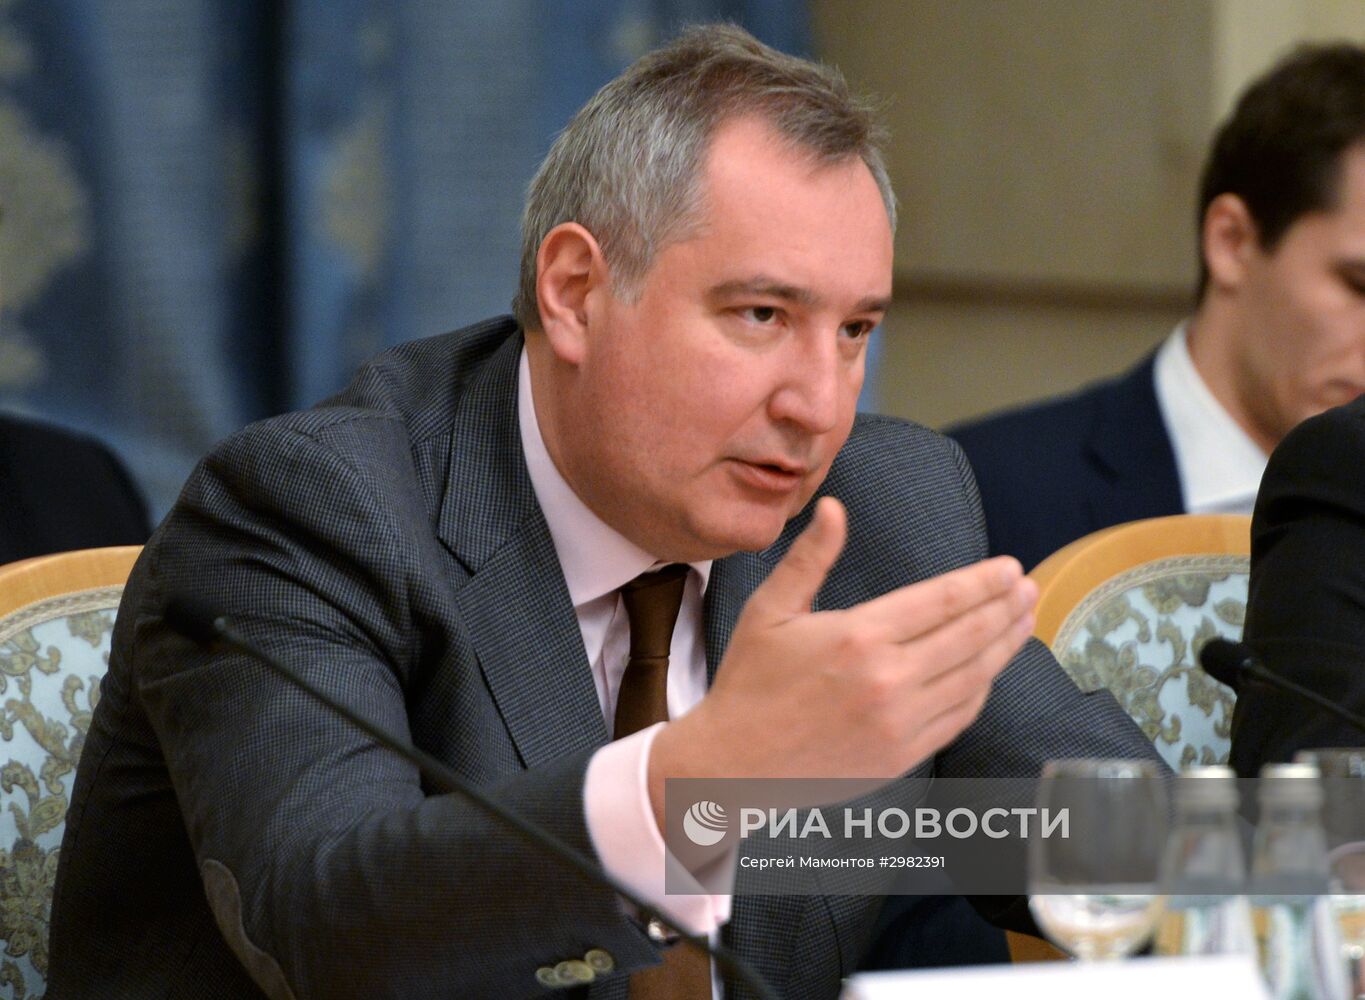 Российско-молдавская межправительственная комиссия по экономическому сотрудничеству